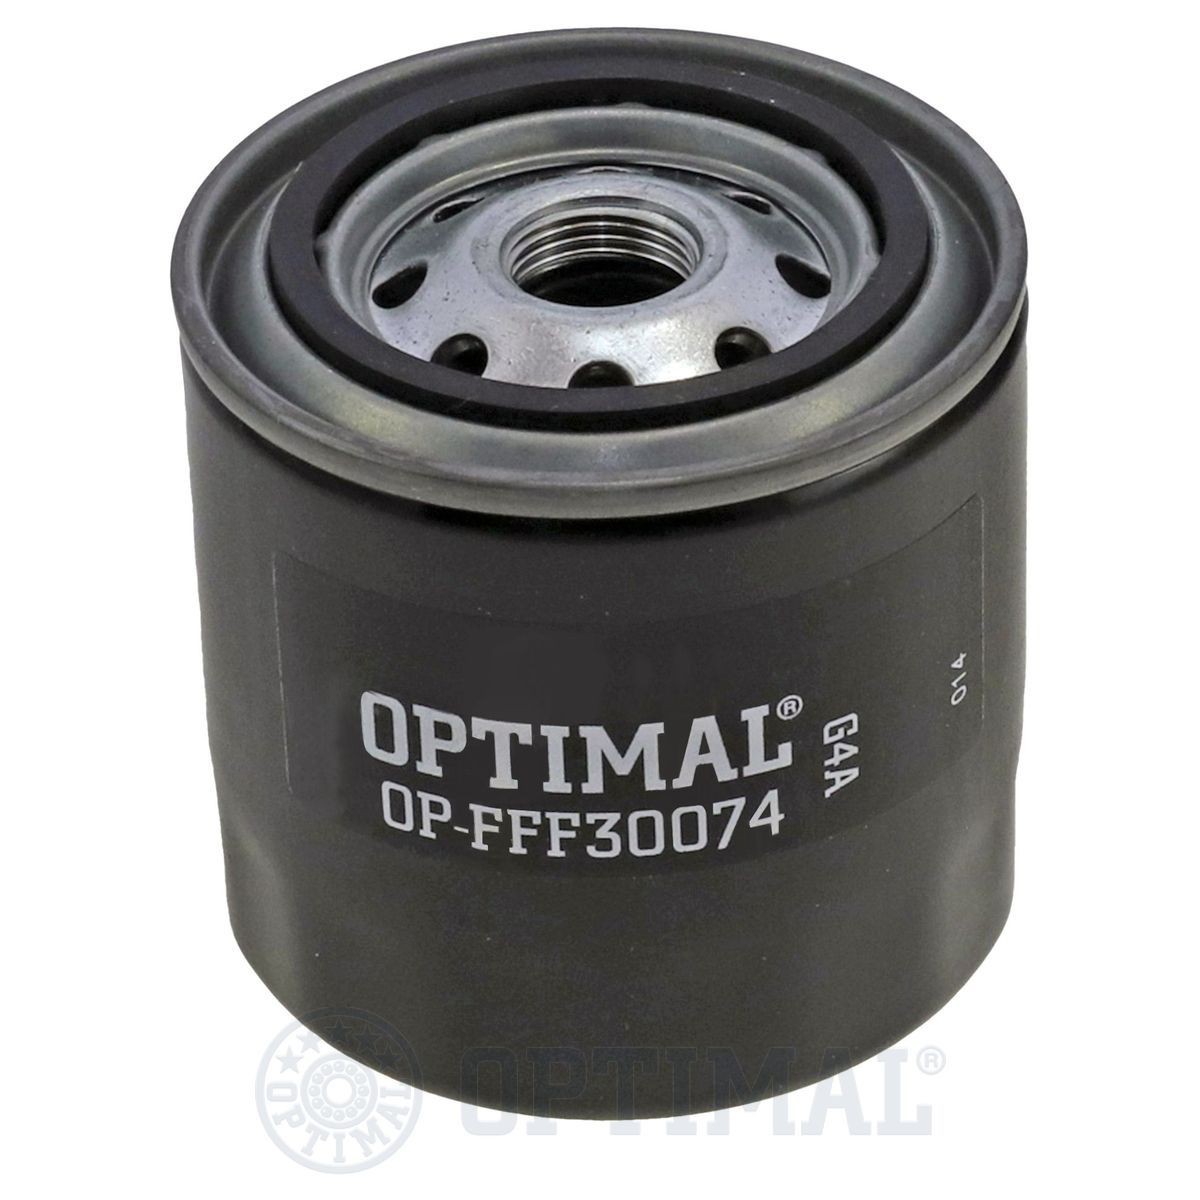 OPTIMAL OP-FFF30074 Fuel filter 8941517440